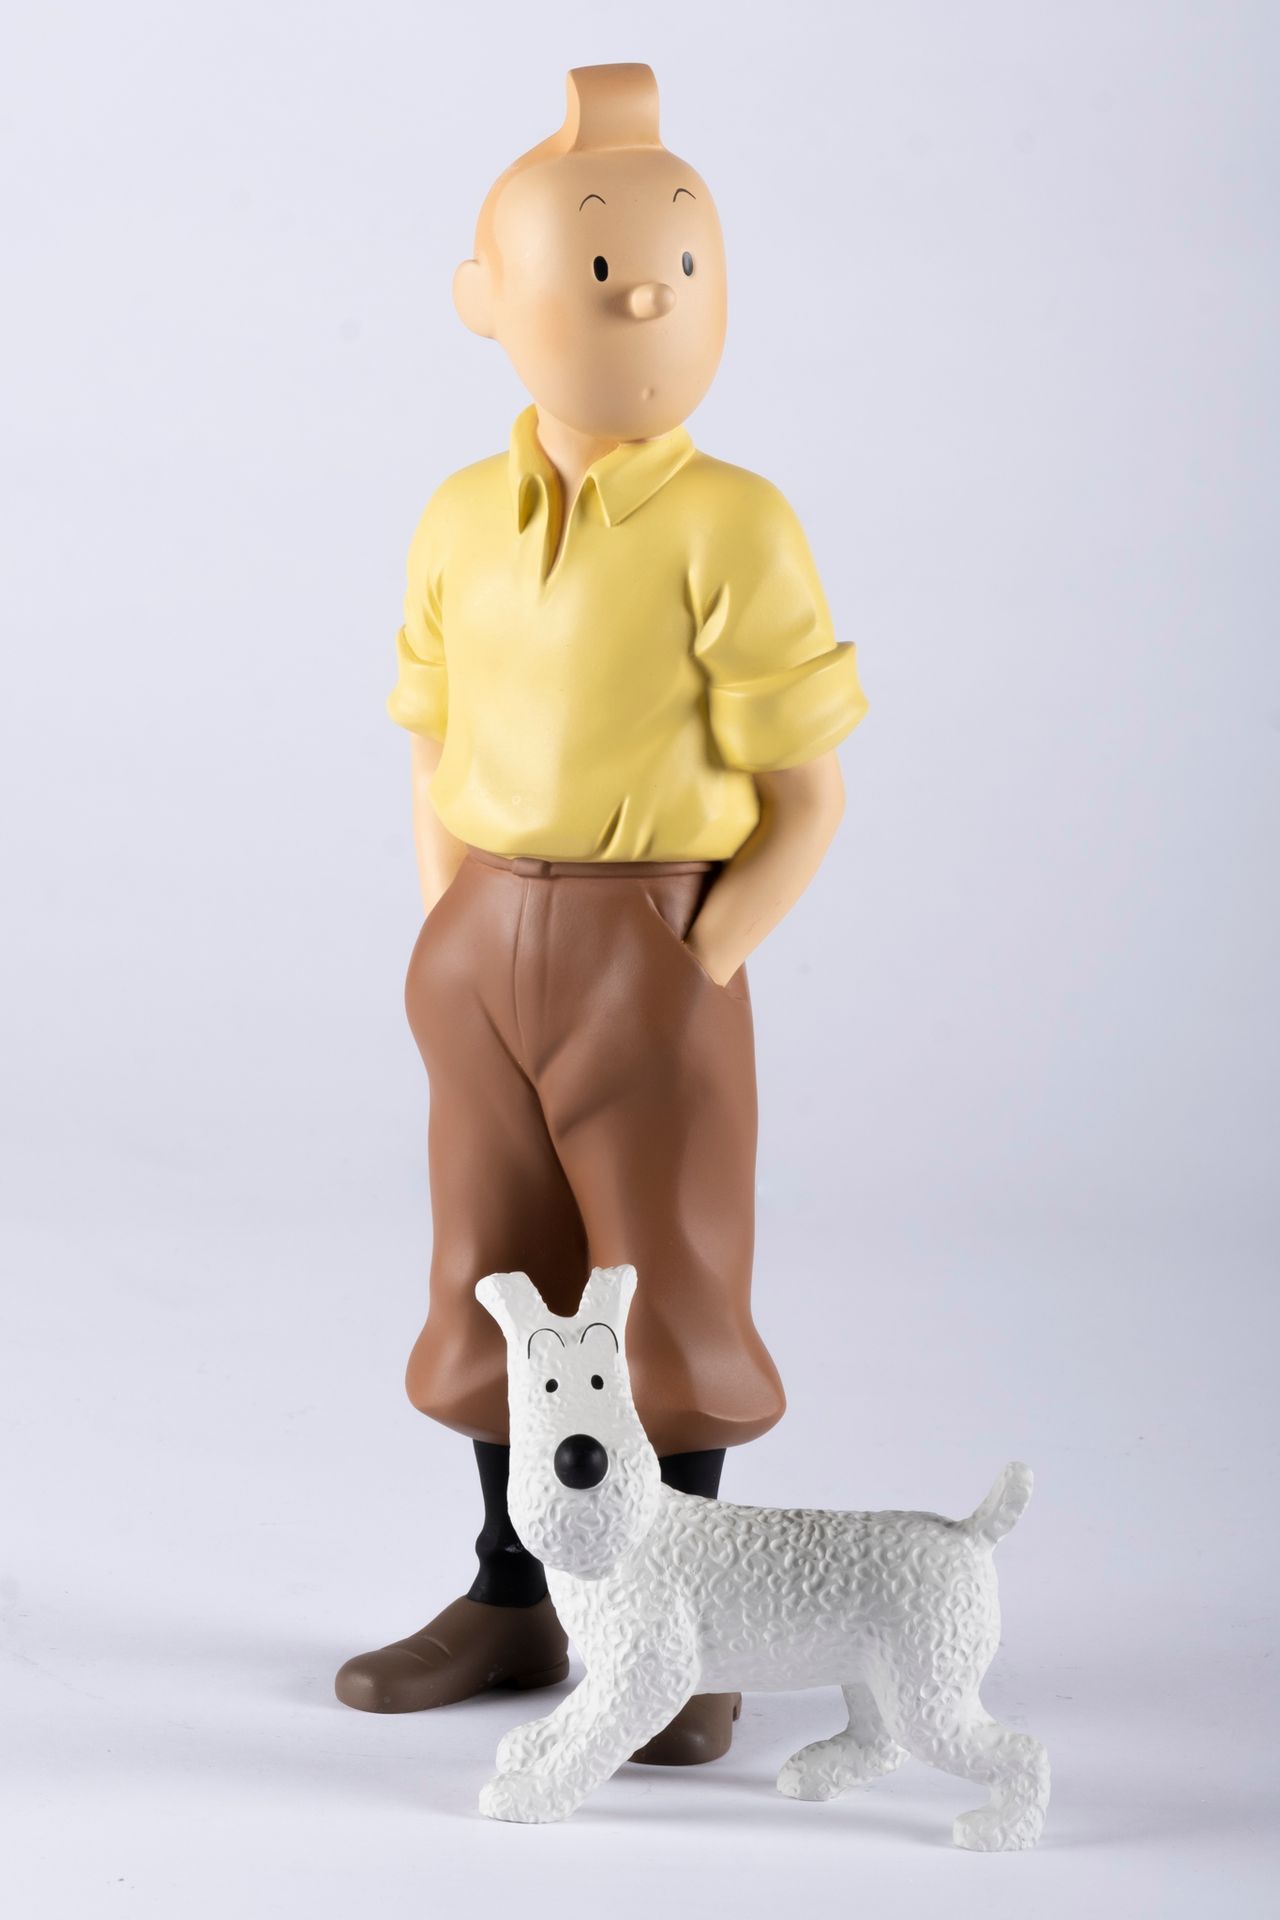 HERGÉ, Georges Remi dit (1907-1983) Tintin - Statuette Moulinsart résine, Réf.45&hellip;